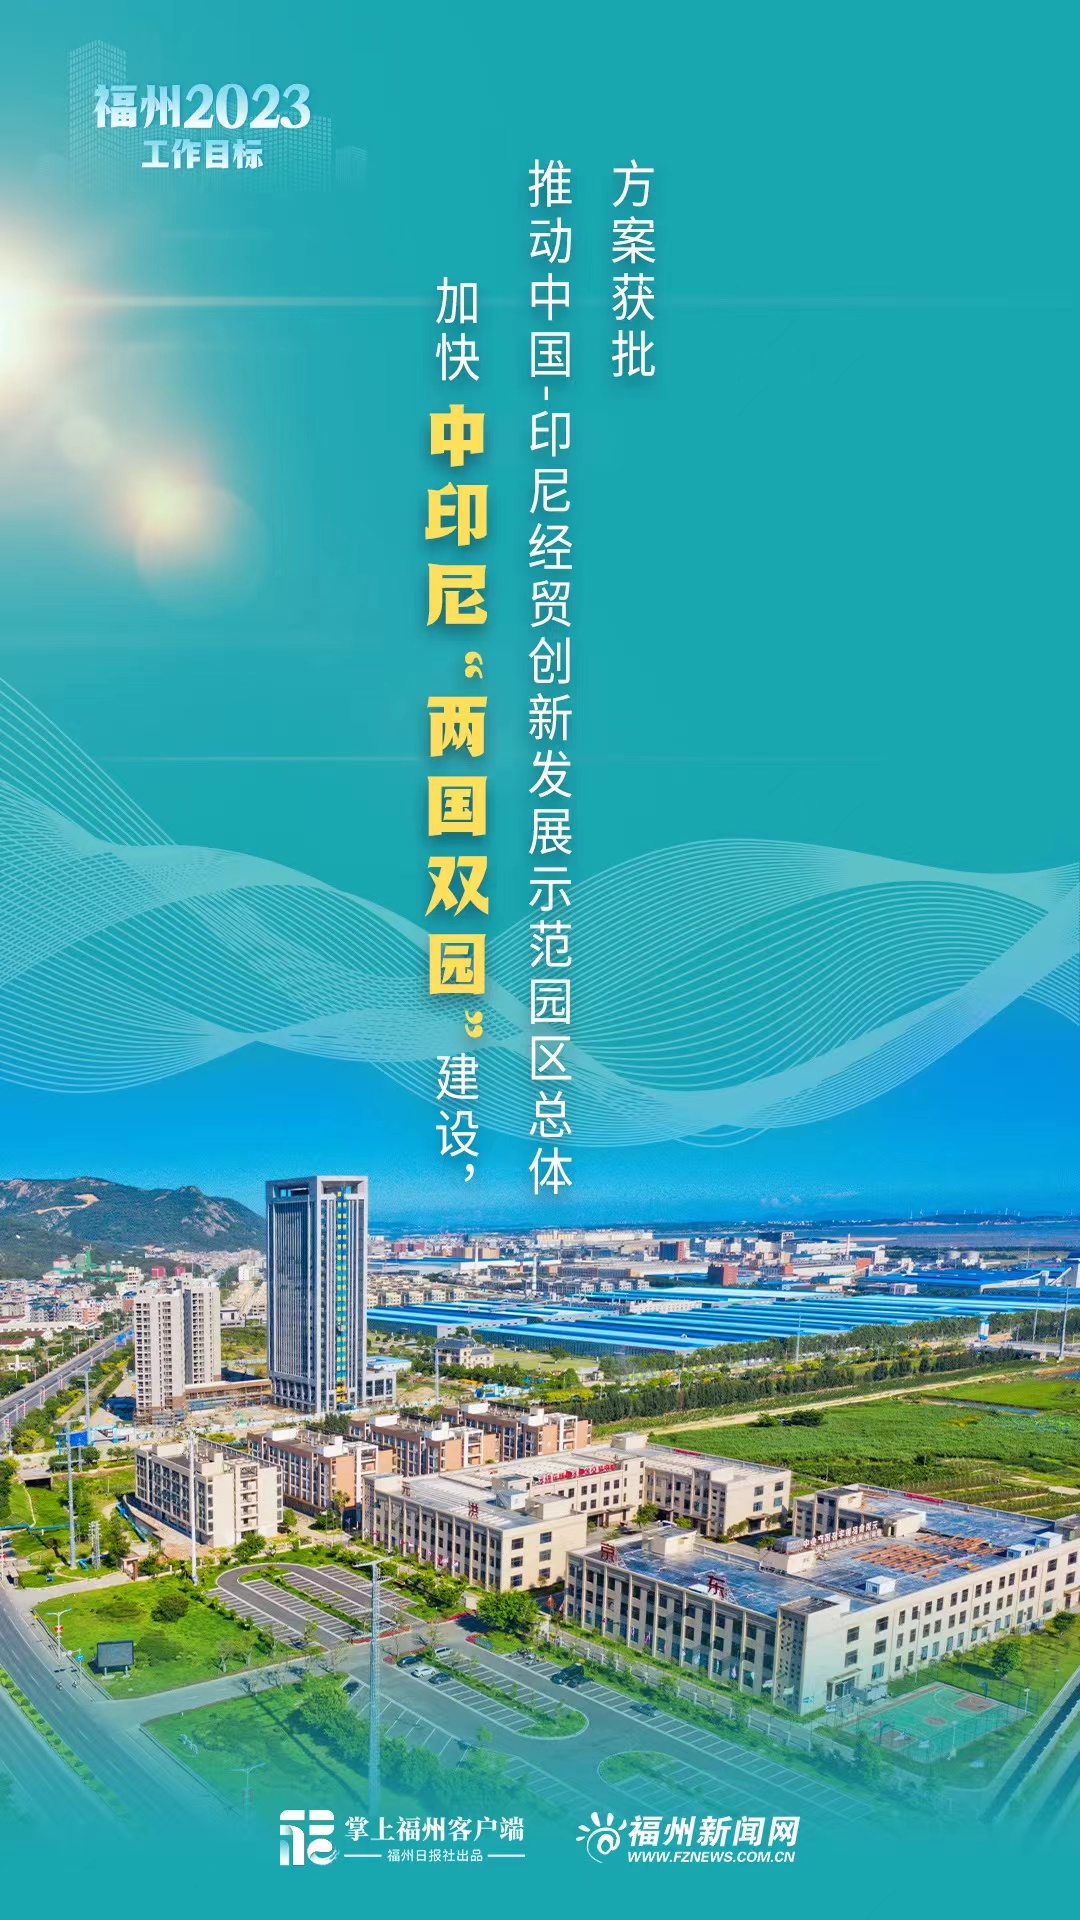 6张海报带你看懂福州2023工作目标